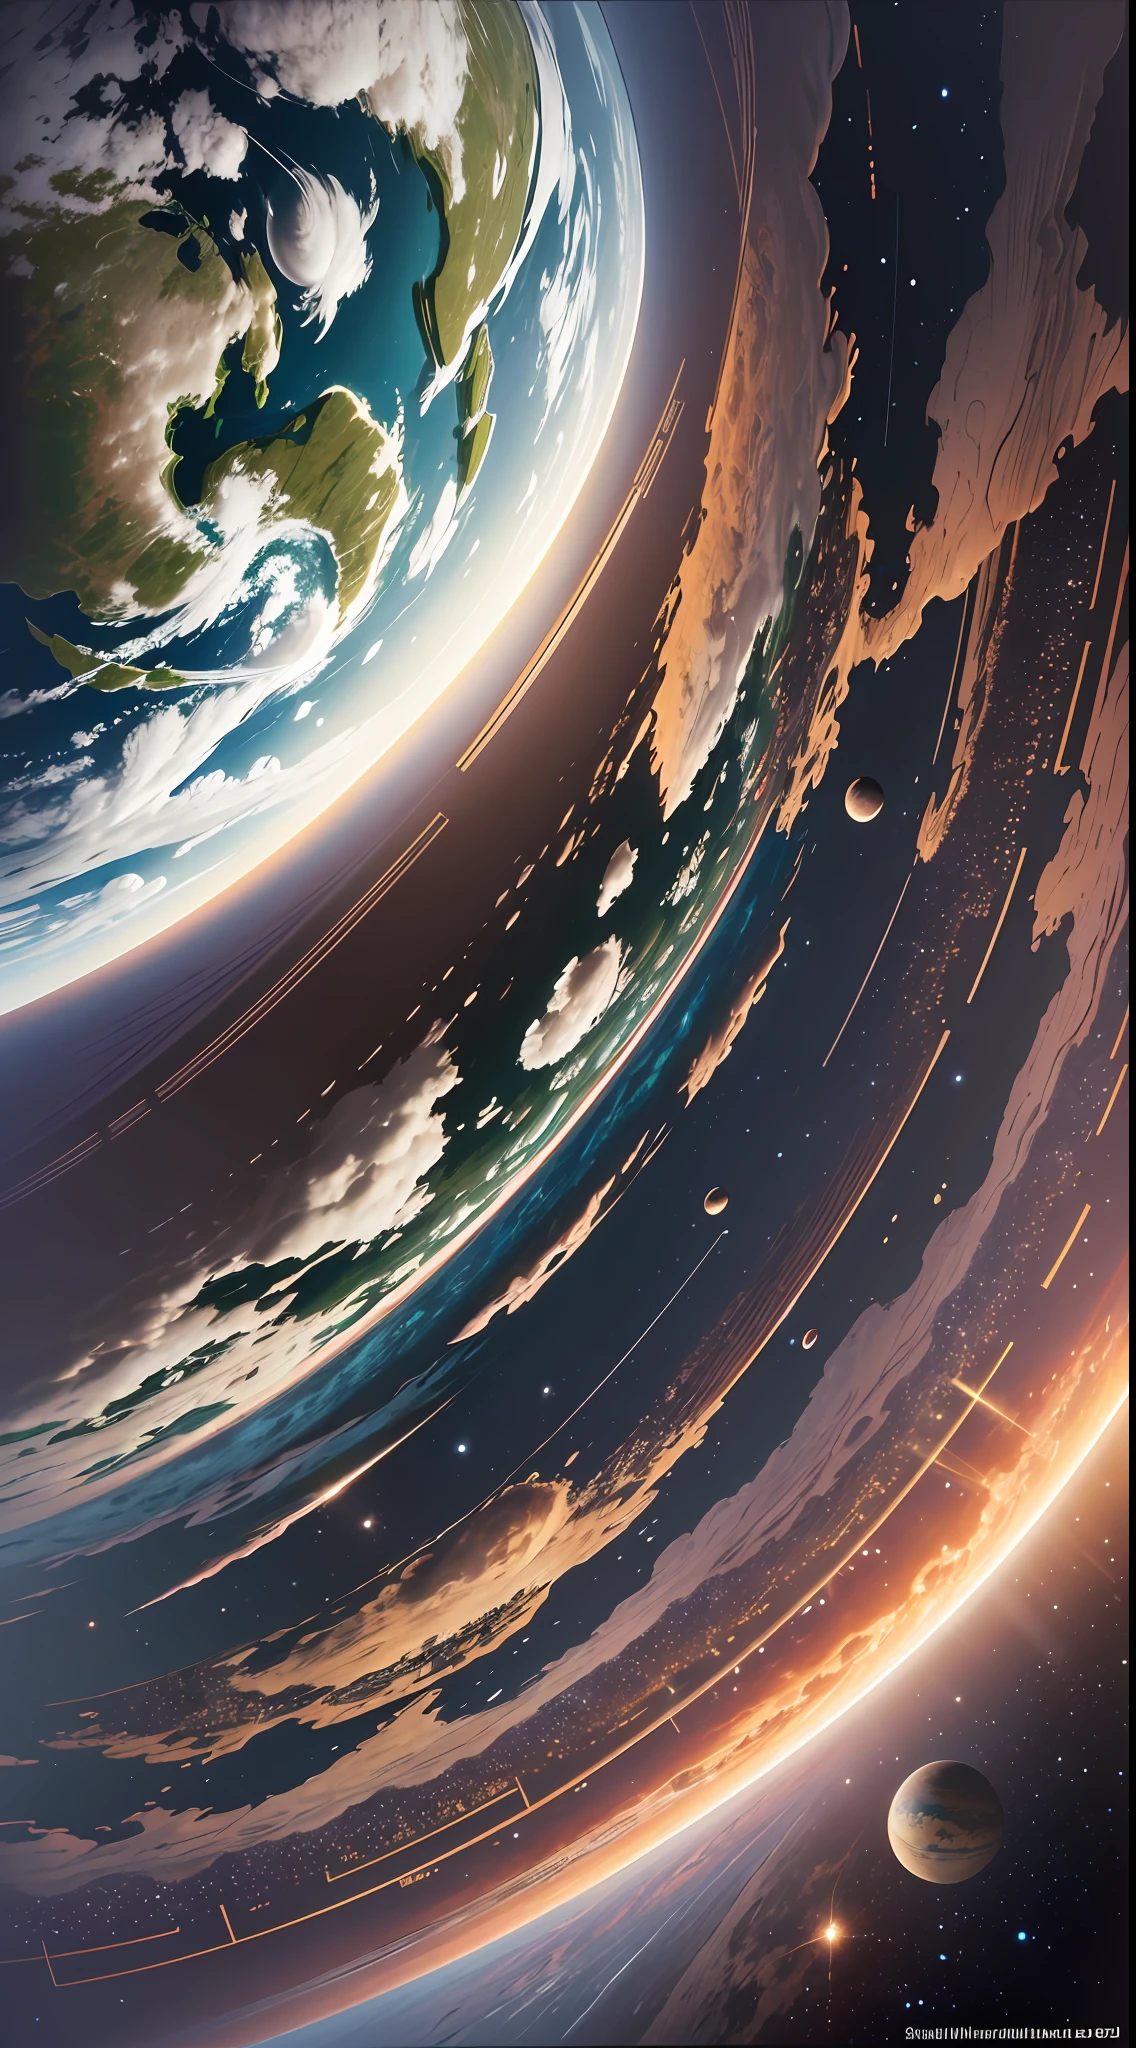 "Ilustración realista de la Tierra por Dan Mumforddo en el sistema solar., gran riqueza de detalles, arte conceptual, reflejos de luz, luz intensa, composición para redes sociales, canon, Obra maestra". --auto --s2